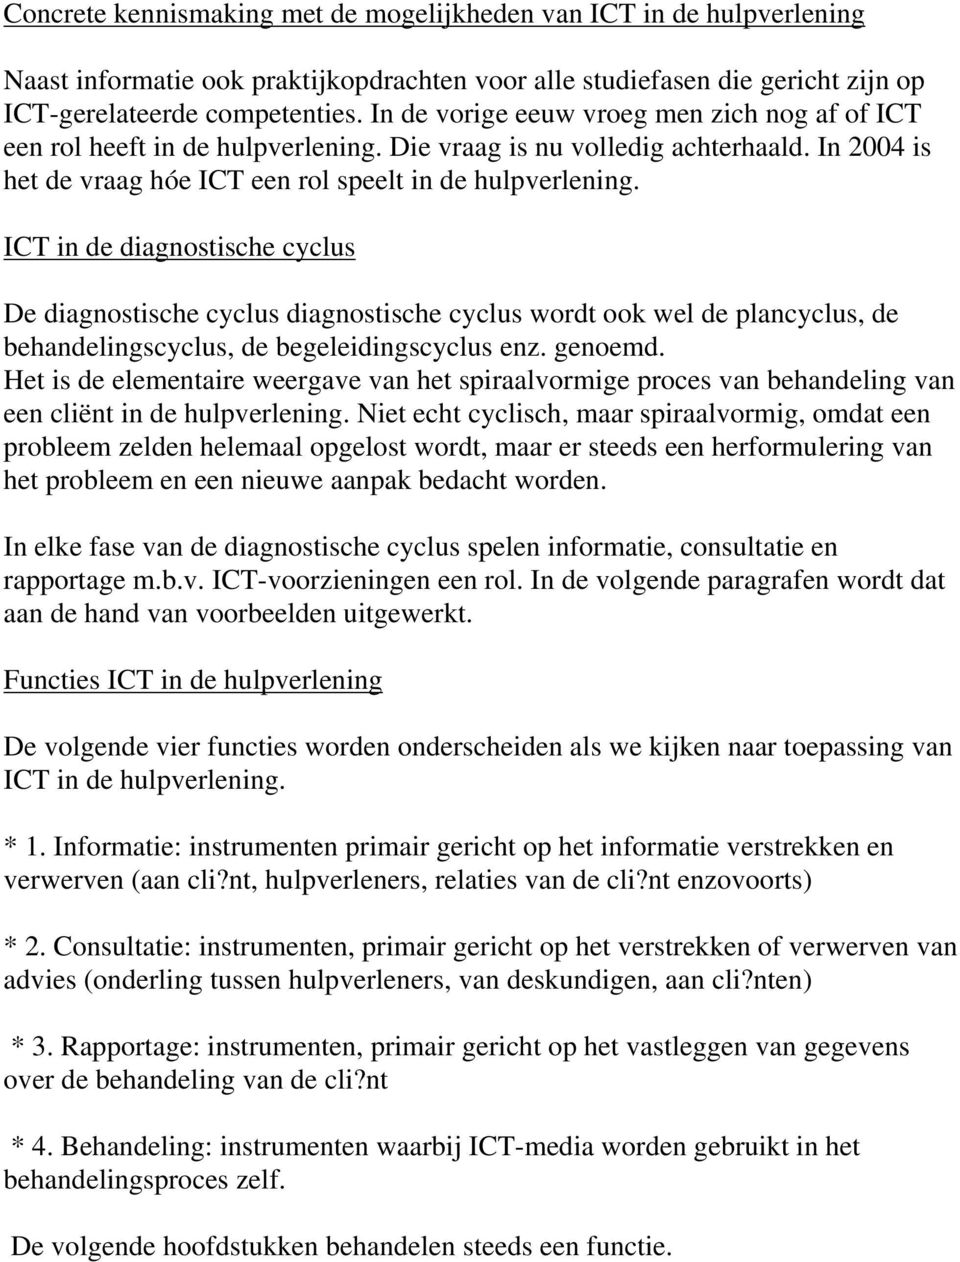 ICT in de diagnostische cyclus De diagnostische cyclus diagnostische cyclus wordt ook wel de plancyclus, de behandelingscyclus, de begeleidingscyclus enz. genoemd.